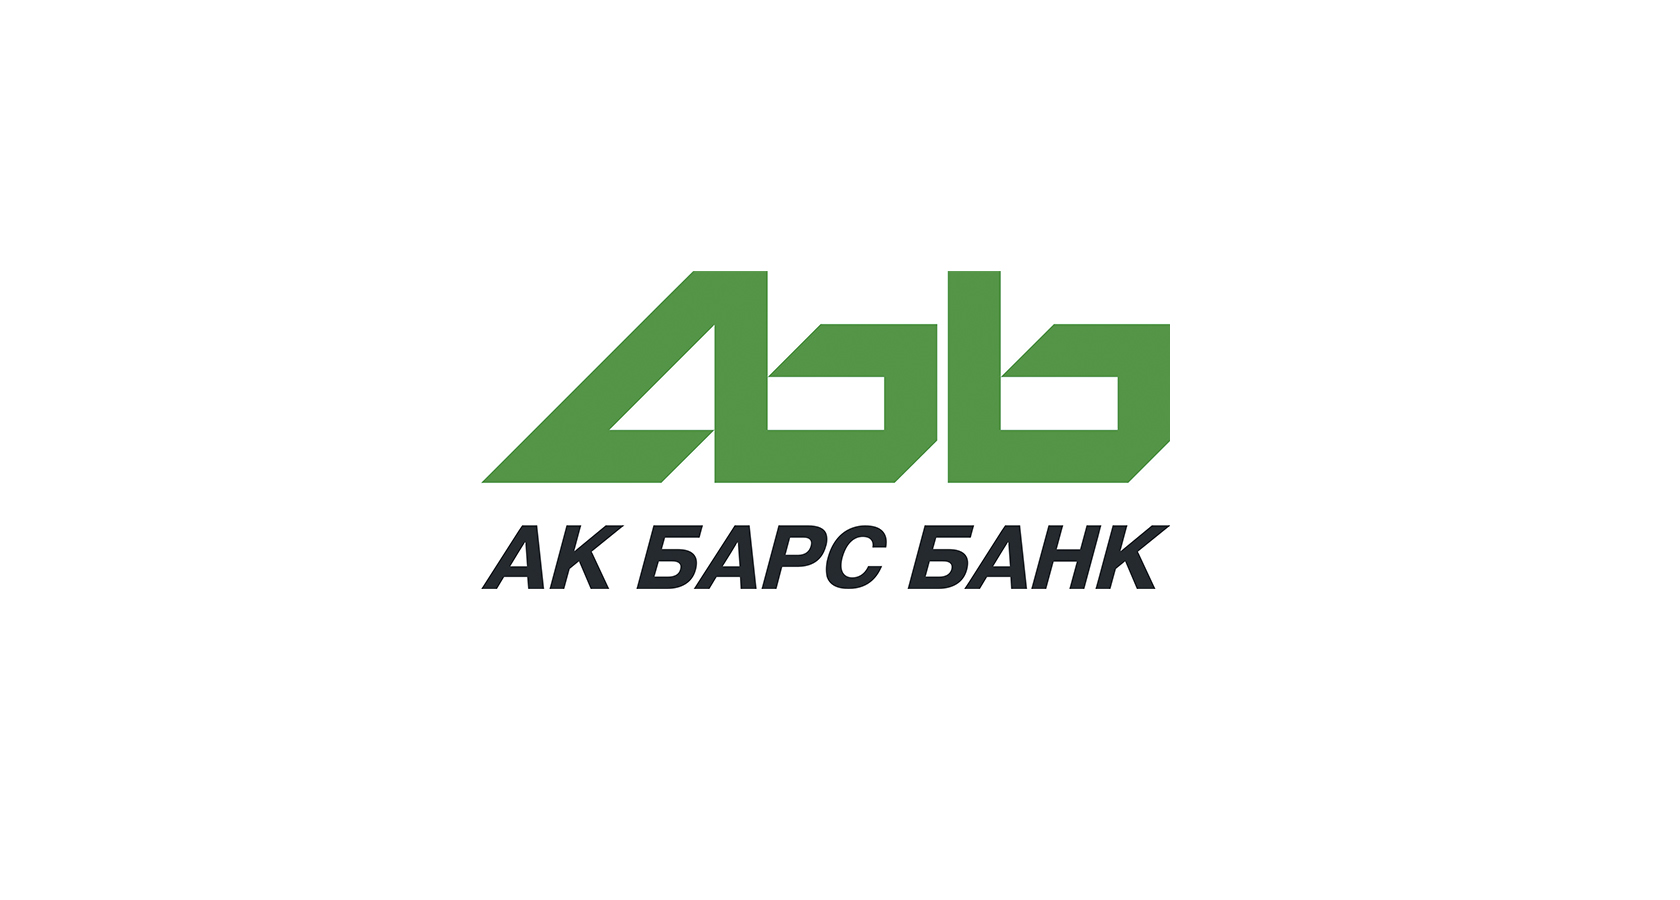 АК Барс банк. АК Барс банк логотип. Логотип АК Барс банка.